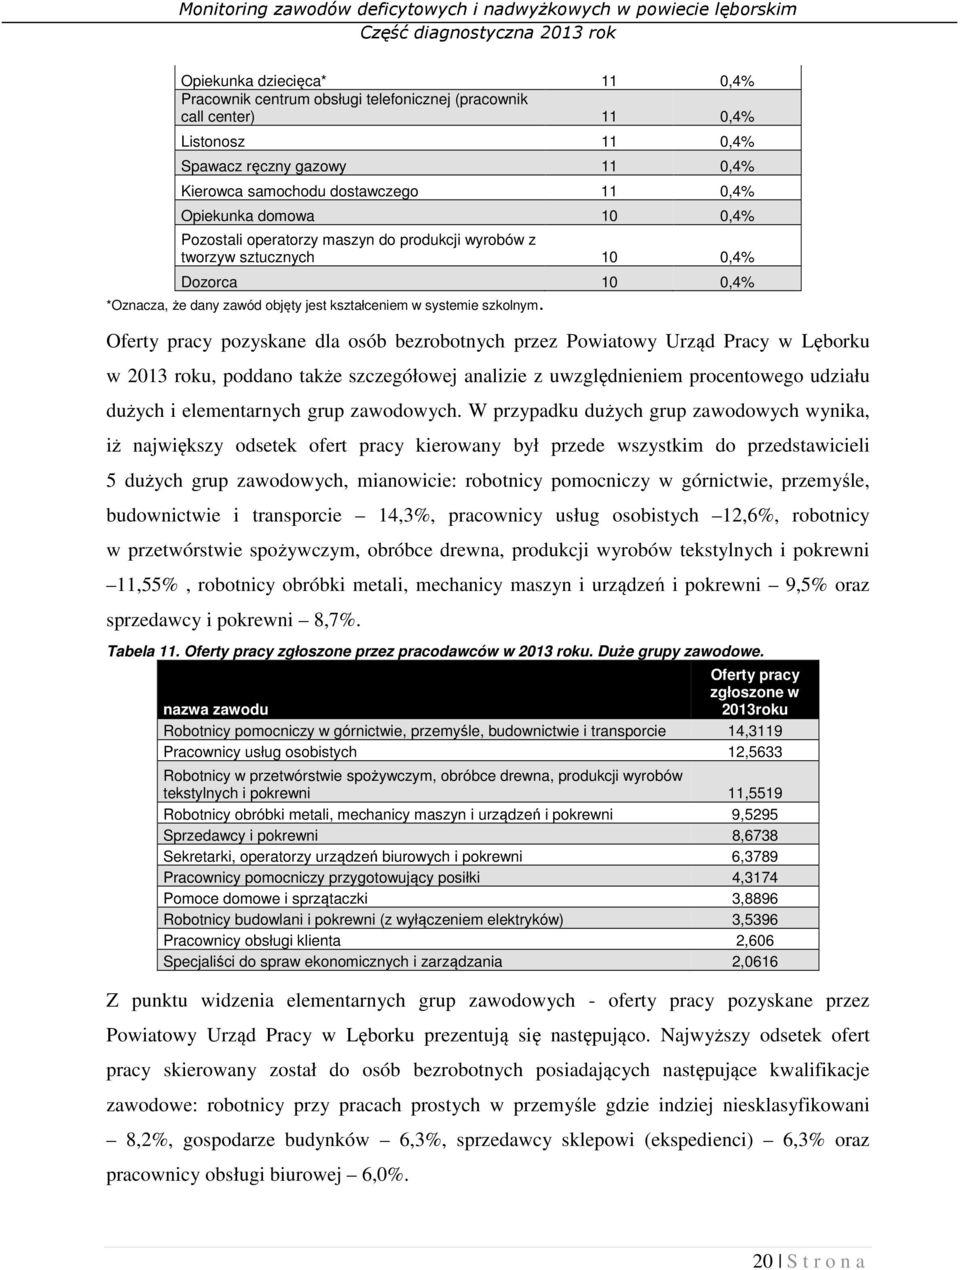 Oferty pracy pozyskane dla osób bezrobotnych przez Powiatowy Urząd Pracy w Lęborku w 2013 roku, poddano także szczegółowej analizie z uwzględnieniem procentowego udziału dużych i elementarnych grup